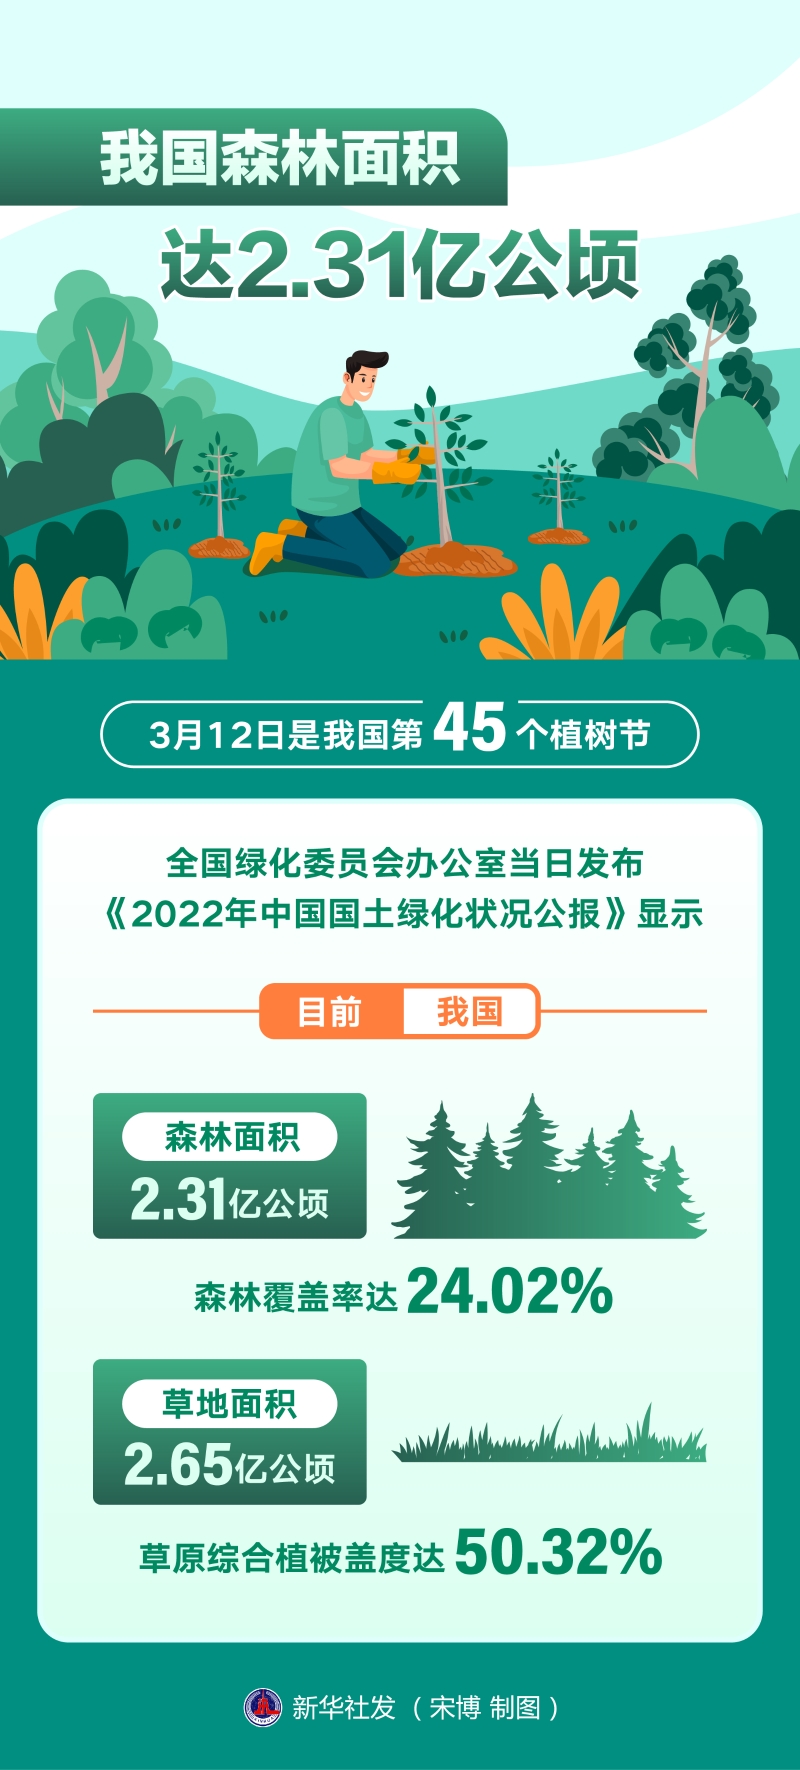 我国森林面积达2.31亿公顷 森林拆穿困绕率达24.02%